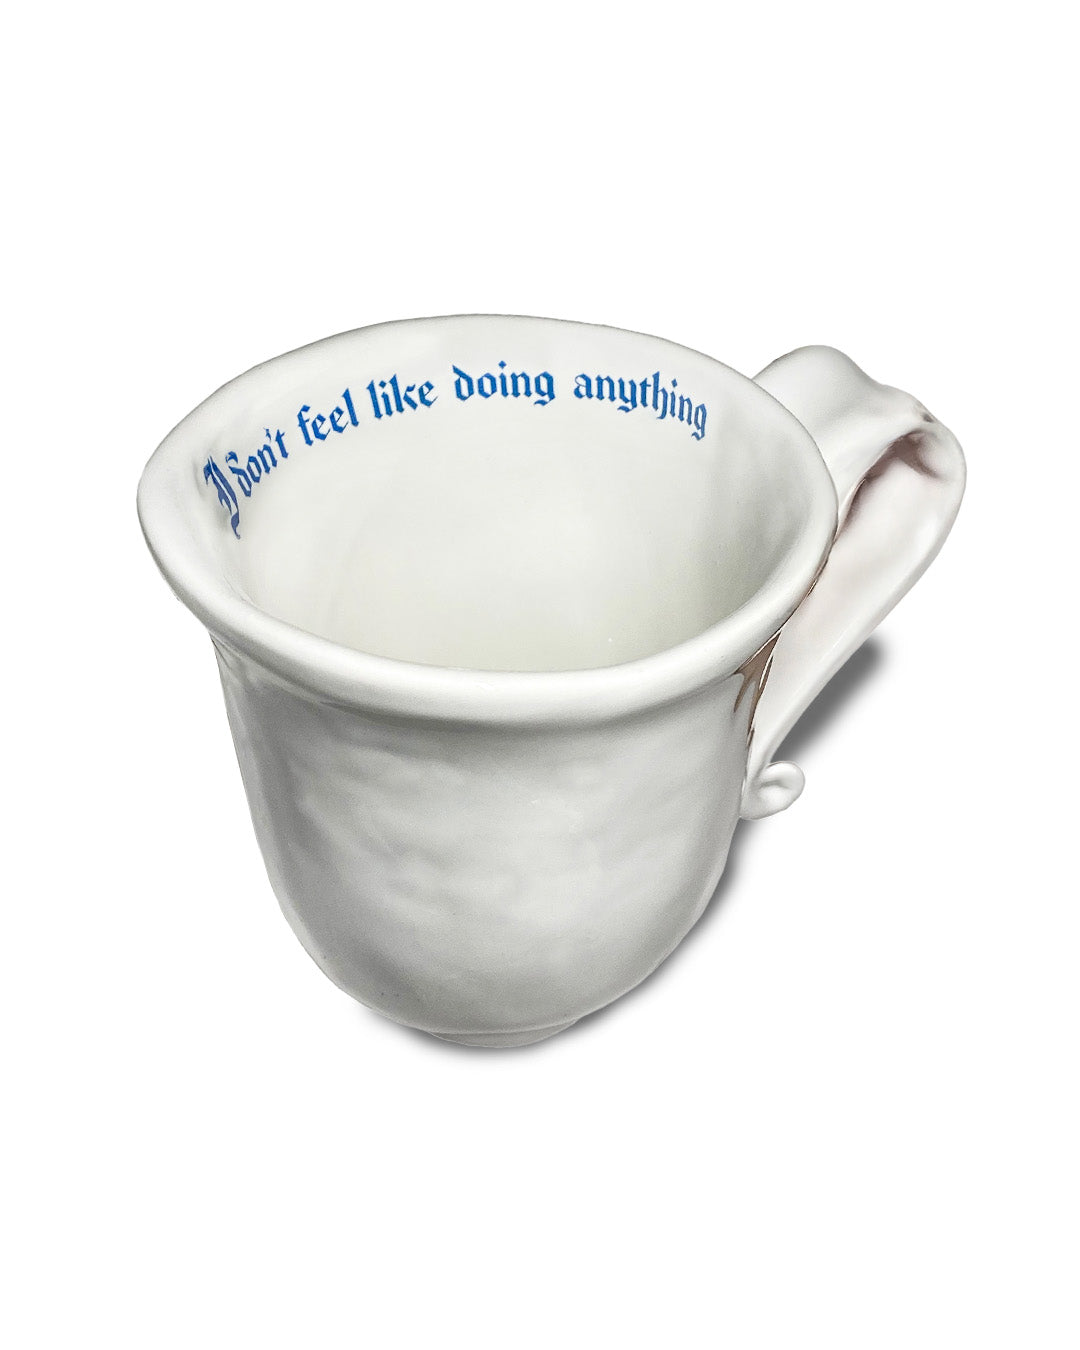 "I don’t feel like doing anything" Sassy Mug